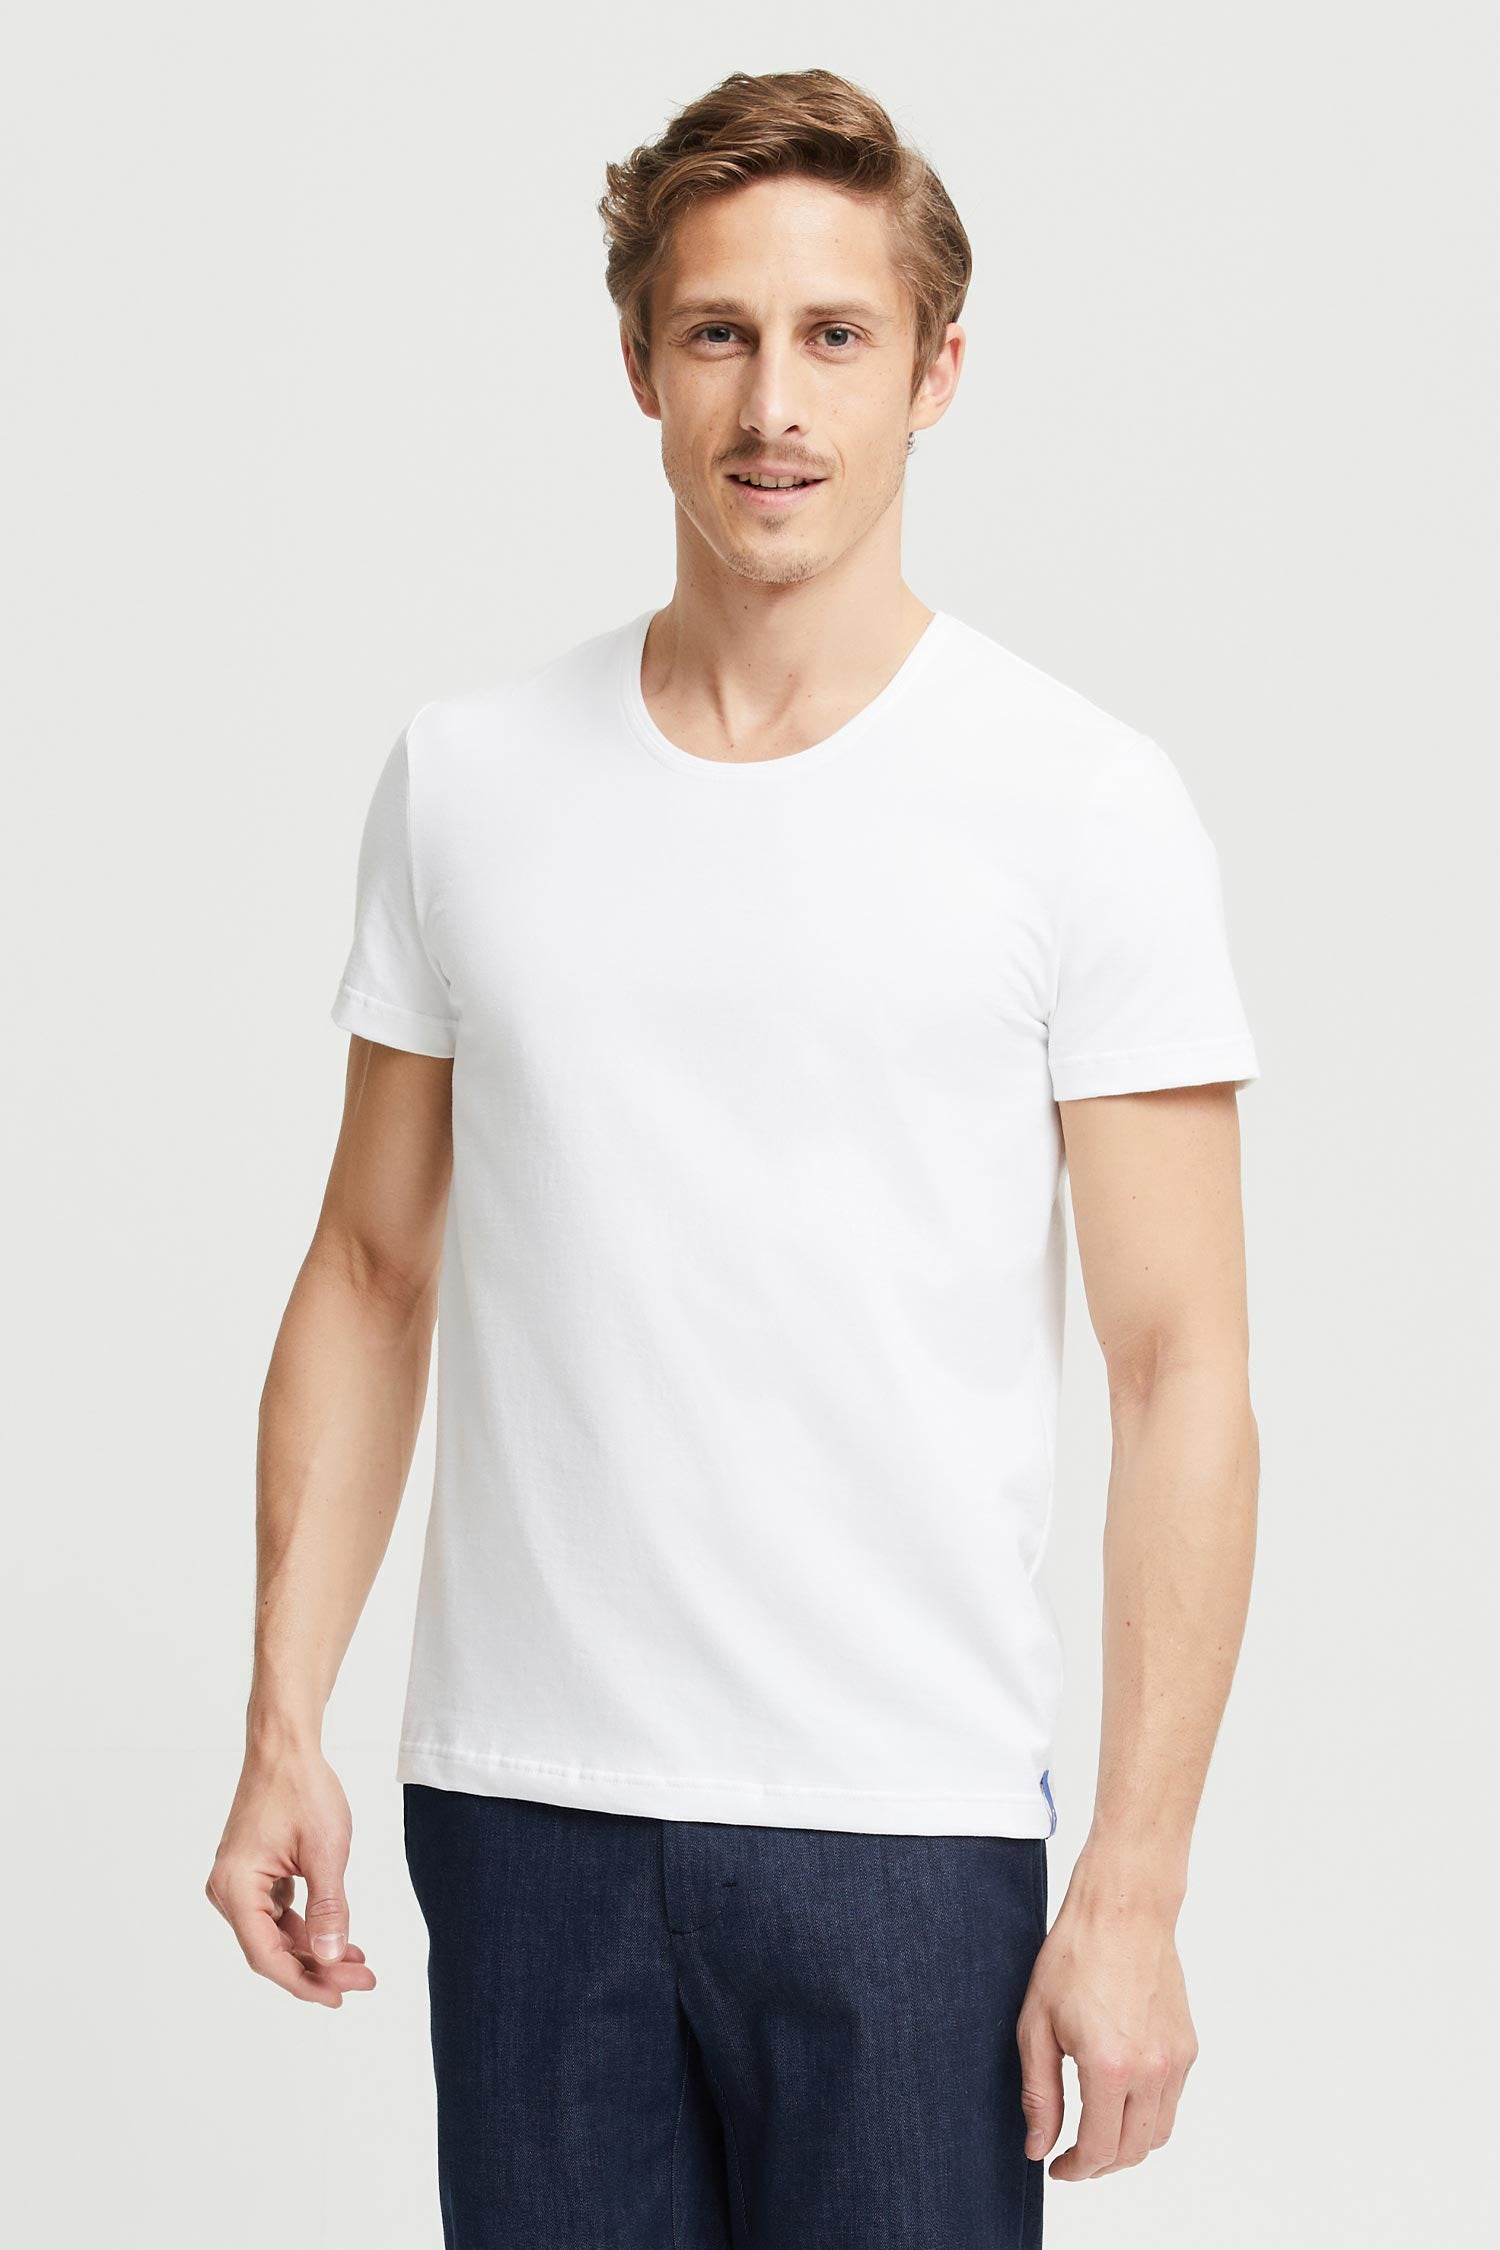 Frenn Henri sustainable premium quality GOTS organic cotton t-shirt white